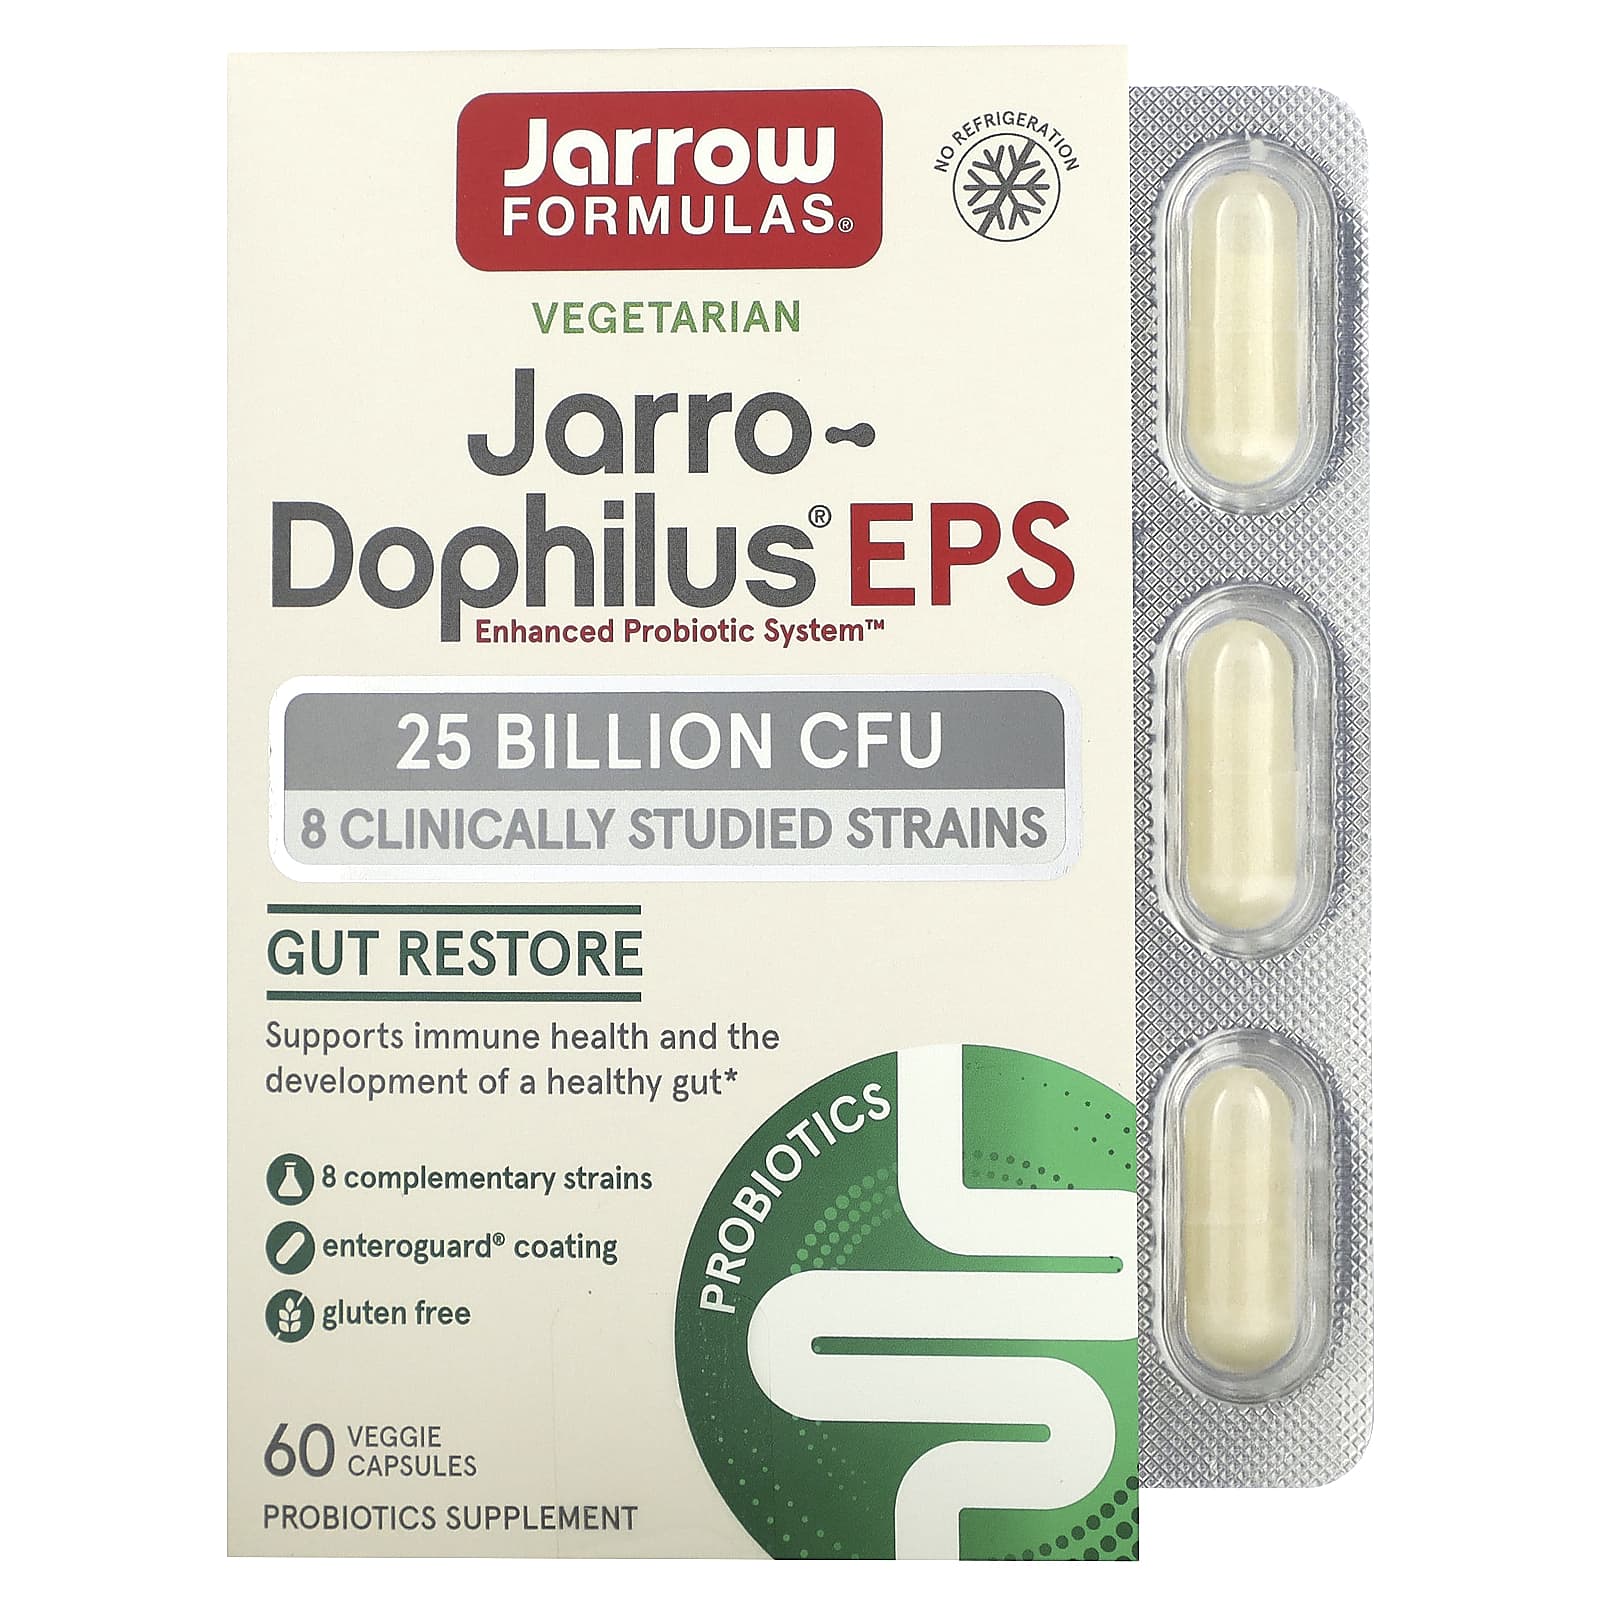 пробиотики для детей jarrow formulas jarro dophilus baby 3 billion cfu 60 г Jarrow Formulas Jarro-Dophilus EPS 25 Billion 60 Enteroguard Veggie Caps